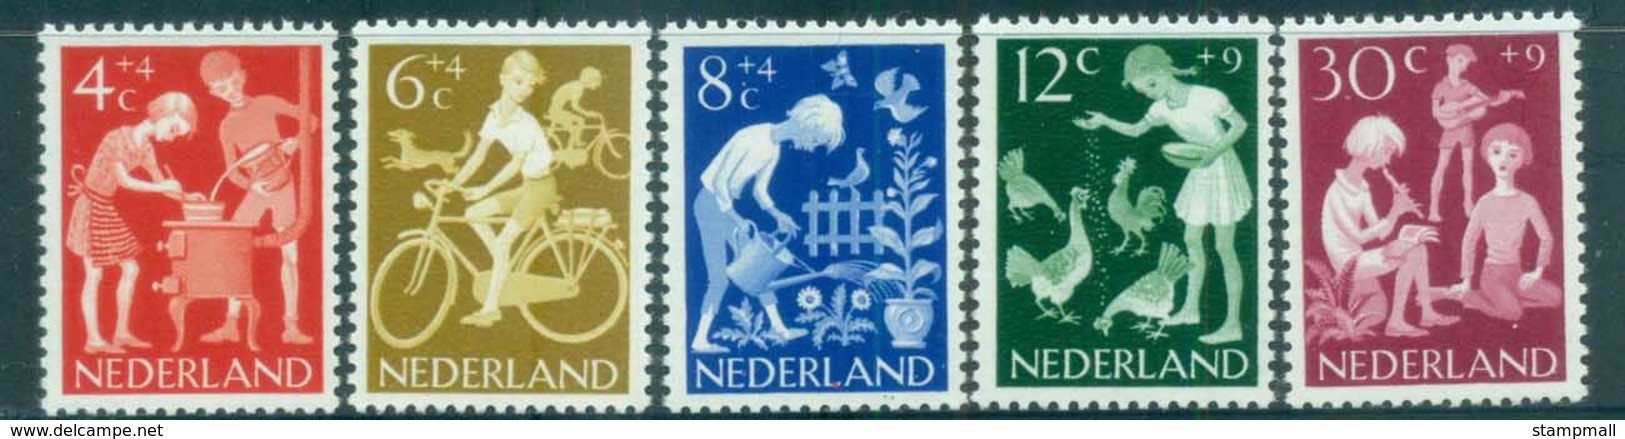 Netherlands 1962 Charity, Child Welfare, Children's Activities MUH Lot76523 - Unclassified